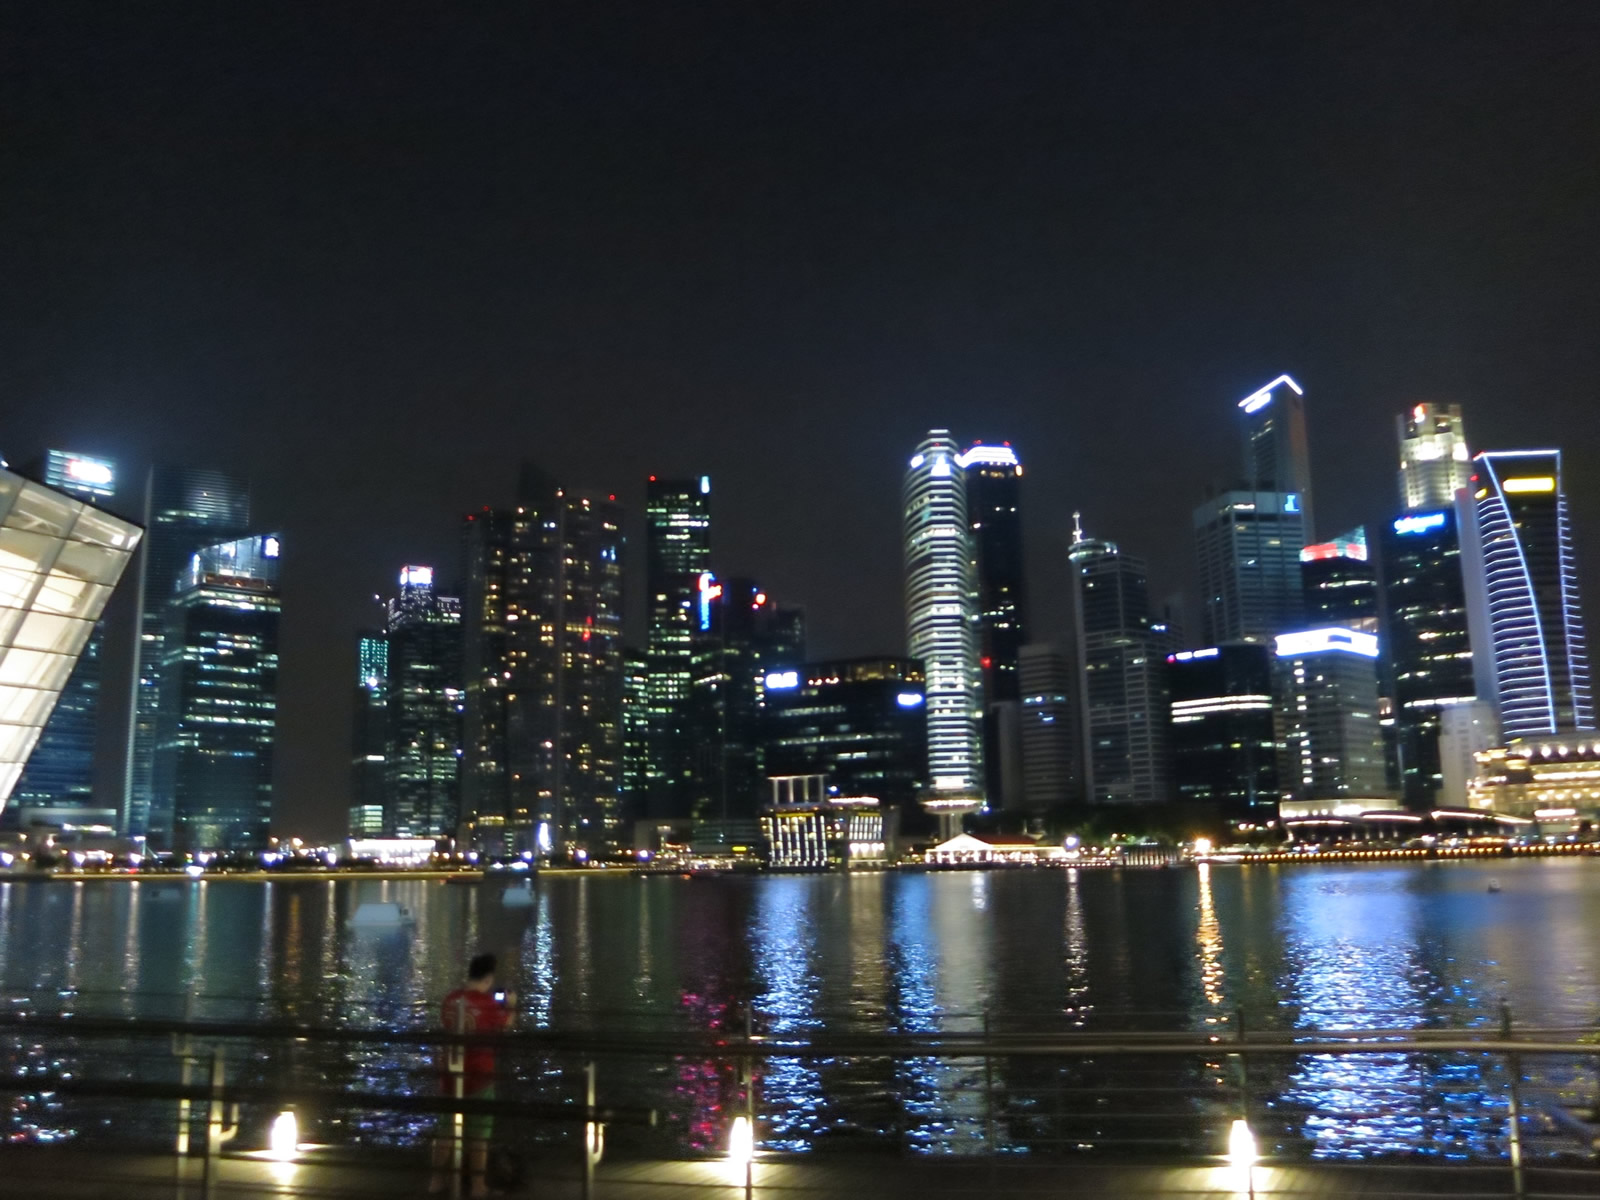 シンガポールの夜景 無料画像 フリー写真素材 Activephotostyle